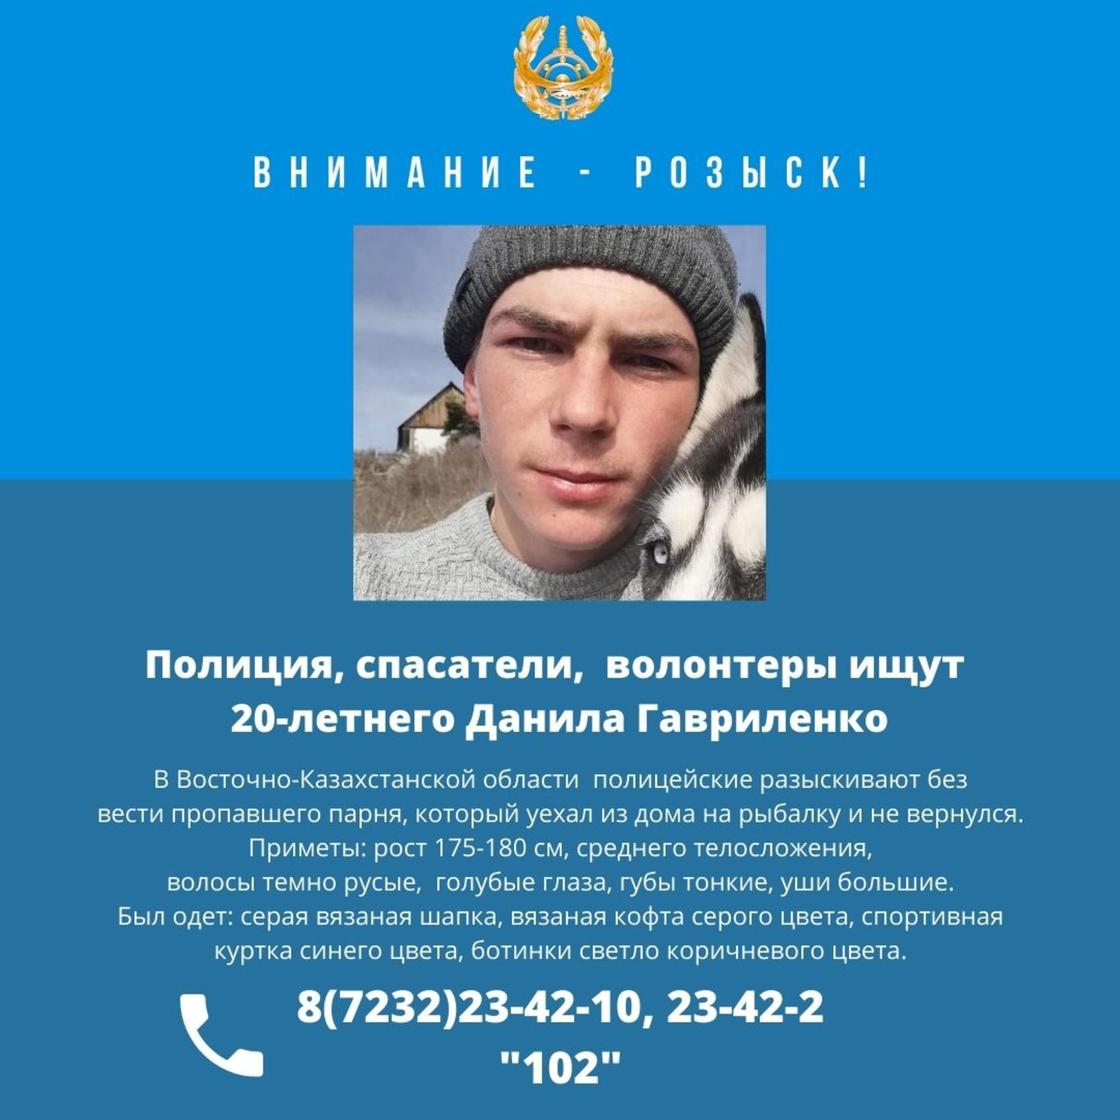 Объявление о розыске пропавшего Данила Гавриленко